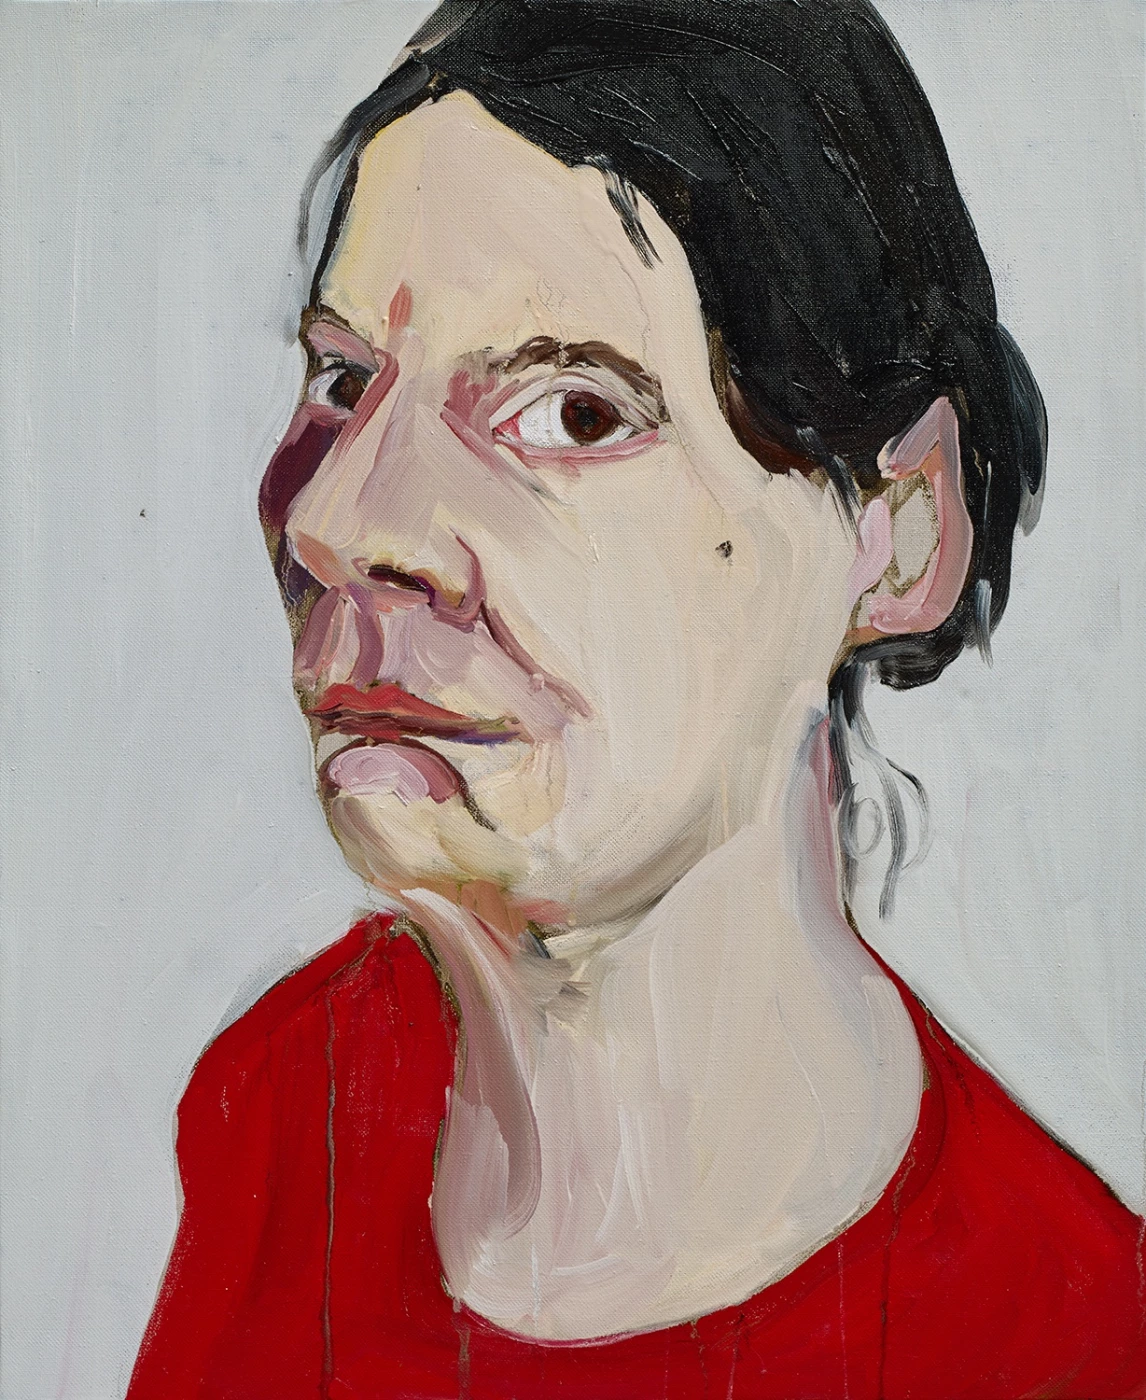 Self-Portrait in a Red Jumper, 2015. Шанталь Джофф (иногда Шанталь Жоффе, англ. Chantal Joffe) - британская художница. Современная живопись. Contemporary art, paintings